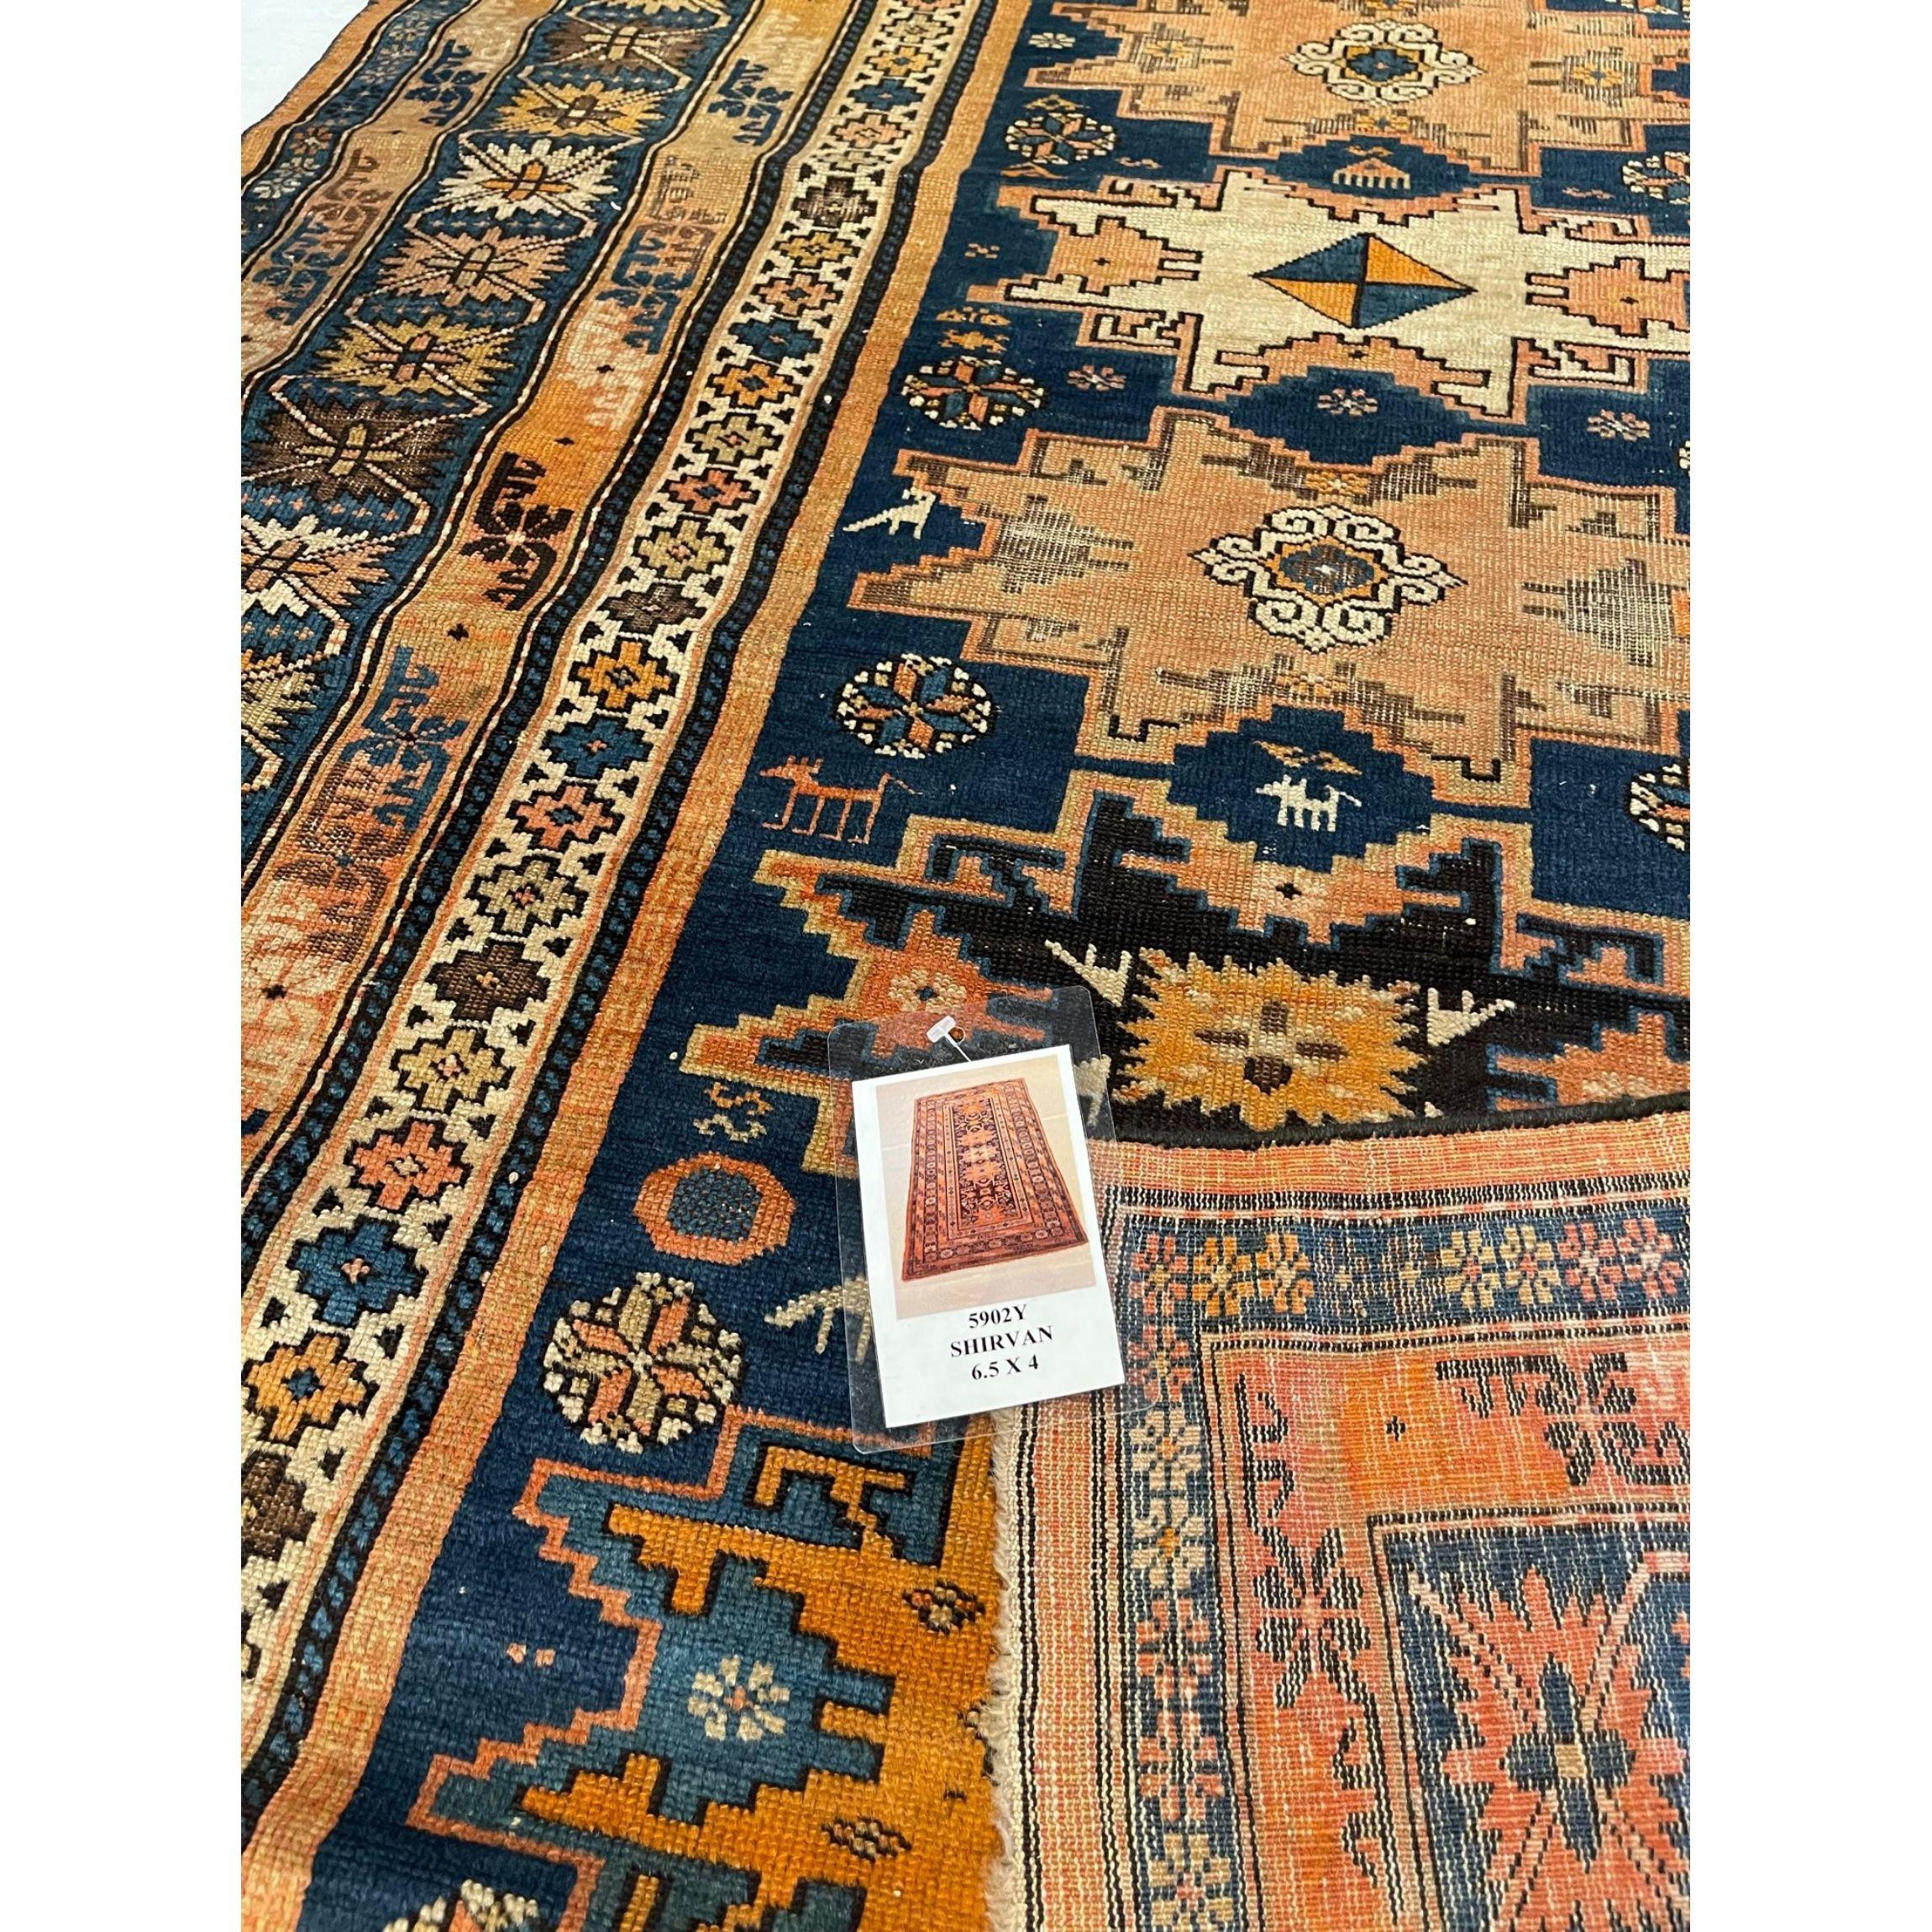 Tapis de Shirvan - Le khanat historique ou district administratif de Shirvan a produit de nombreux tapis anciens très décoratifs, d'une formalité et d'une complexité stylistique que l'on retrouve dans peu de tapis du Caucase. La profondeur des